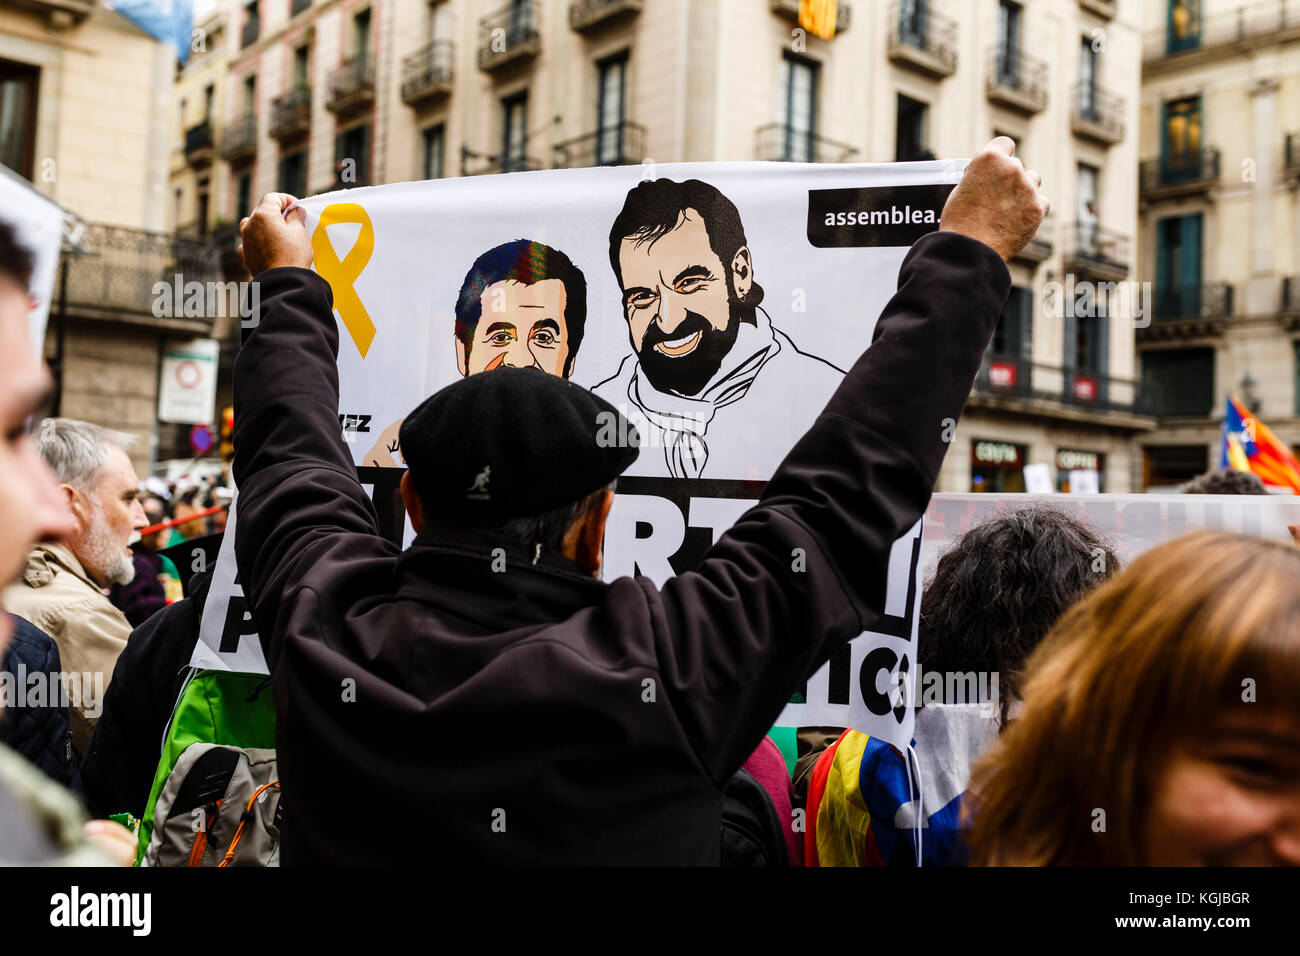 8 de noviembre de 2017 - Barcelona, Barcelona, España - Protesters que piden libertad a los presos políticos durante la concentración en la Plaza de Sant Jaume, Barcelona crédito: Joan Gosa Badia/Alamy Foto de stock